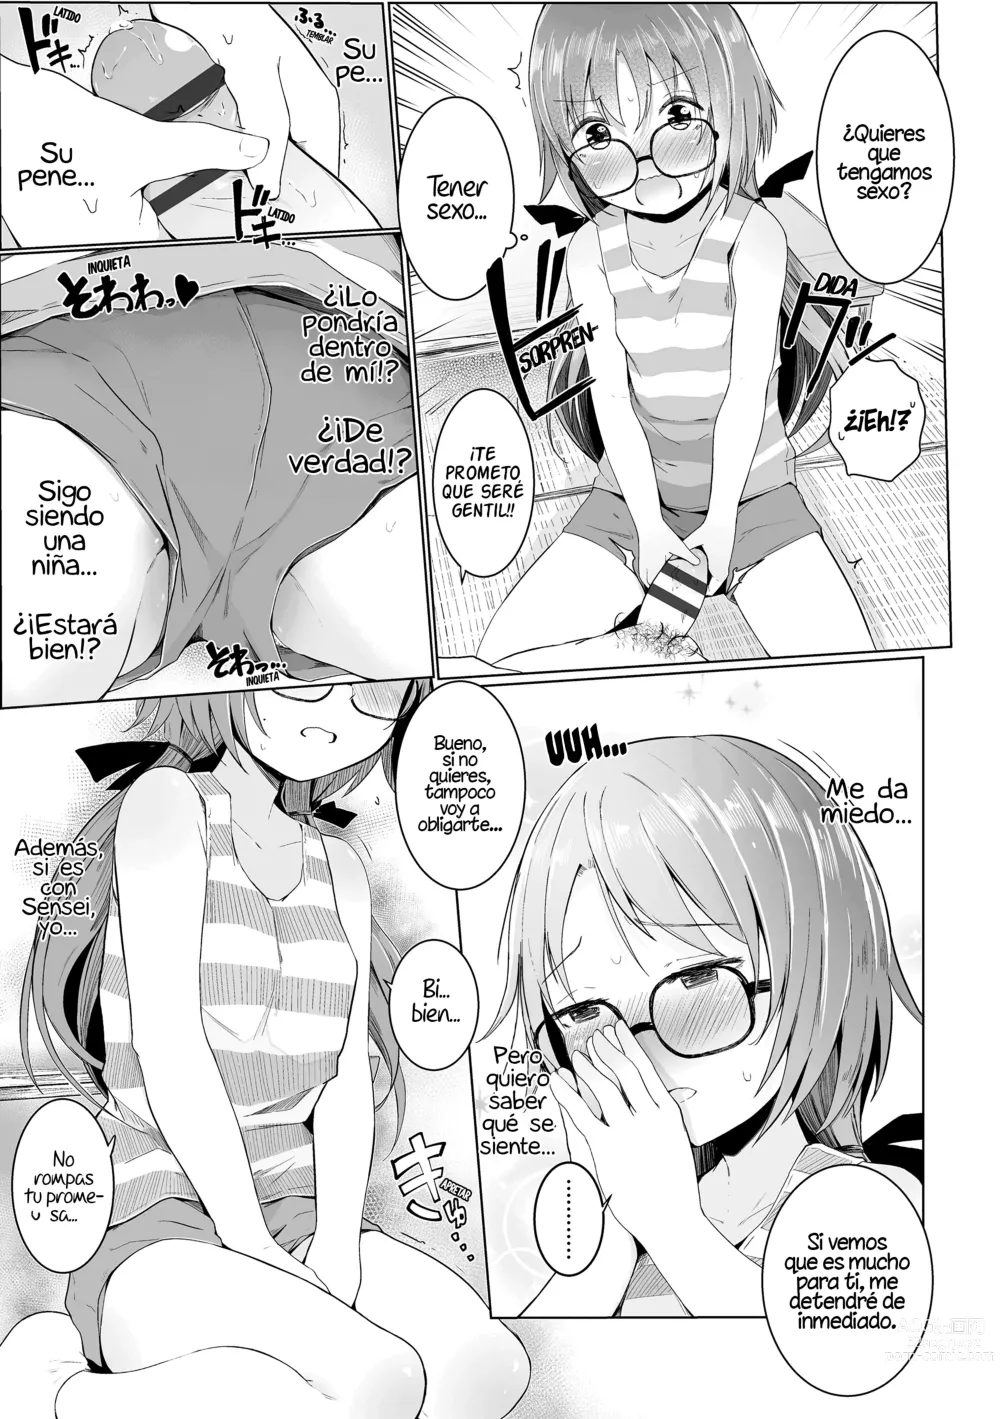 Page 9 of manga ¡Por favor, Sensei!